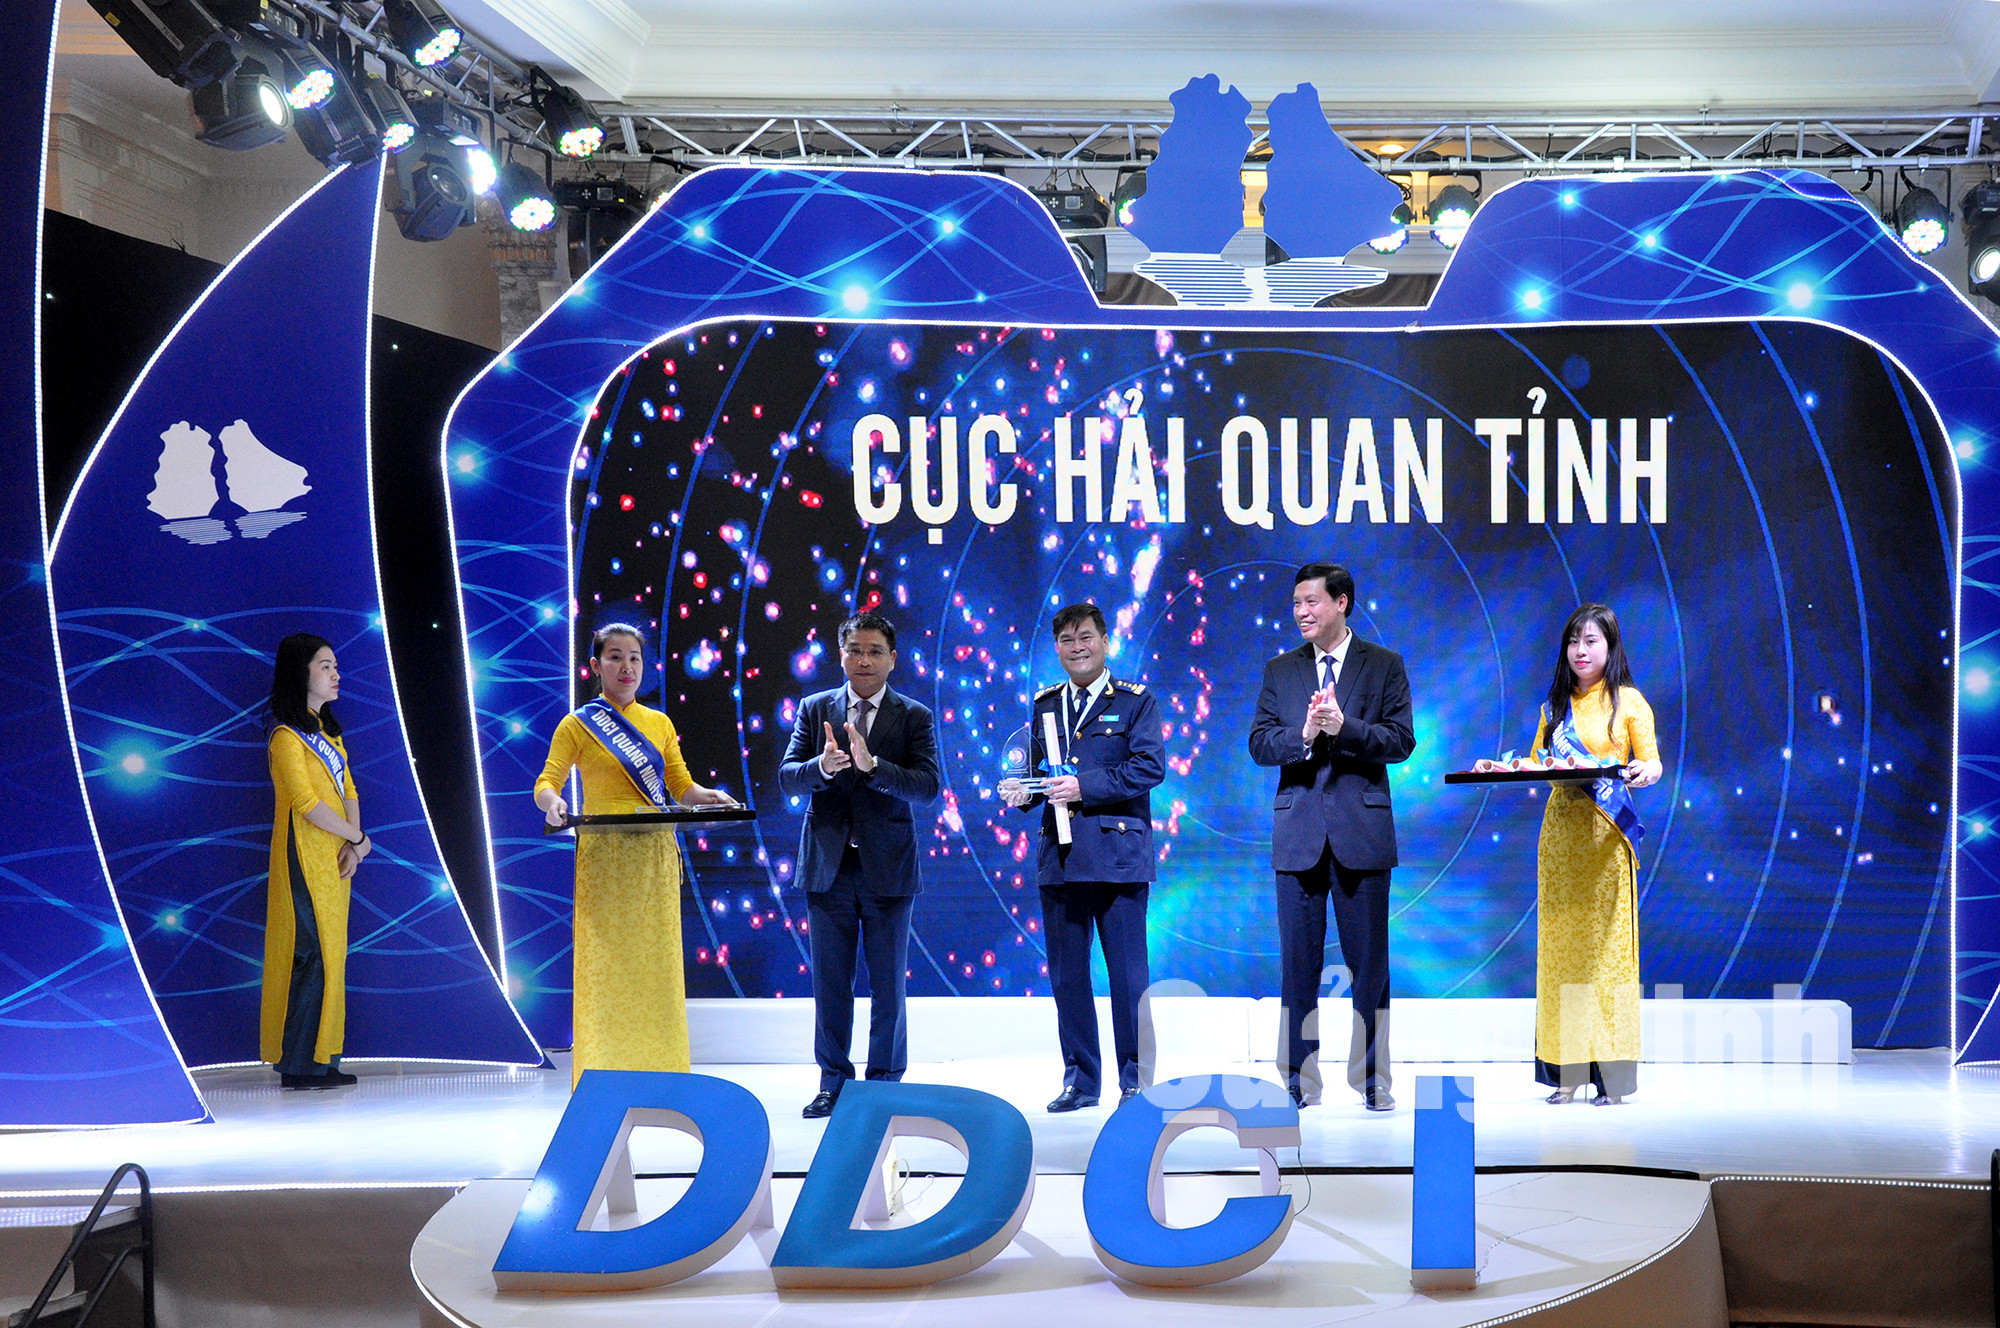 Cục Hải quan Quảng Ninh giành vị trí Quán quân DDCI 2018 (1-2019). Ảnh: Thanh Hằng